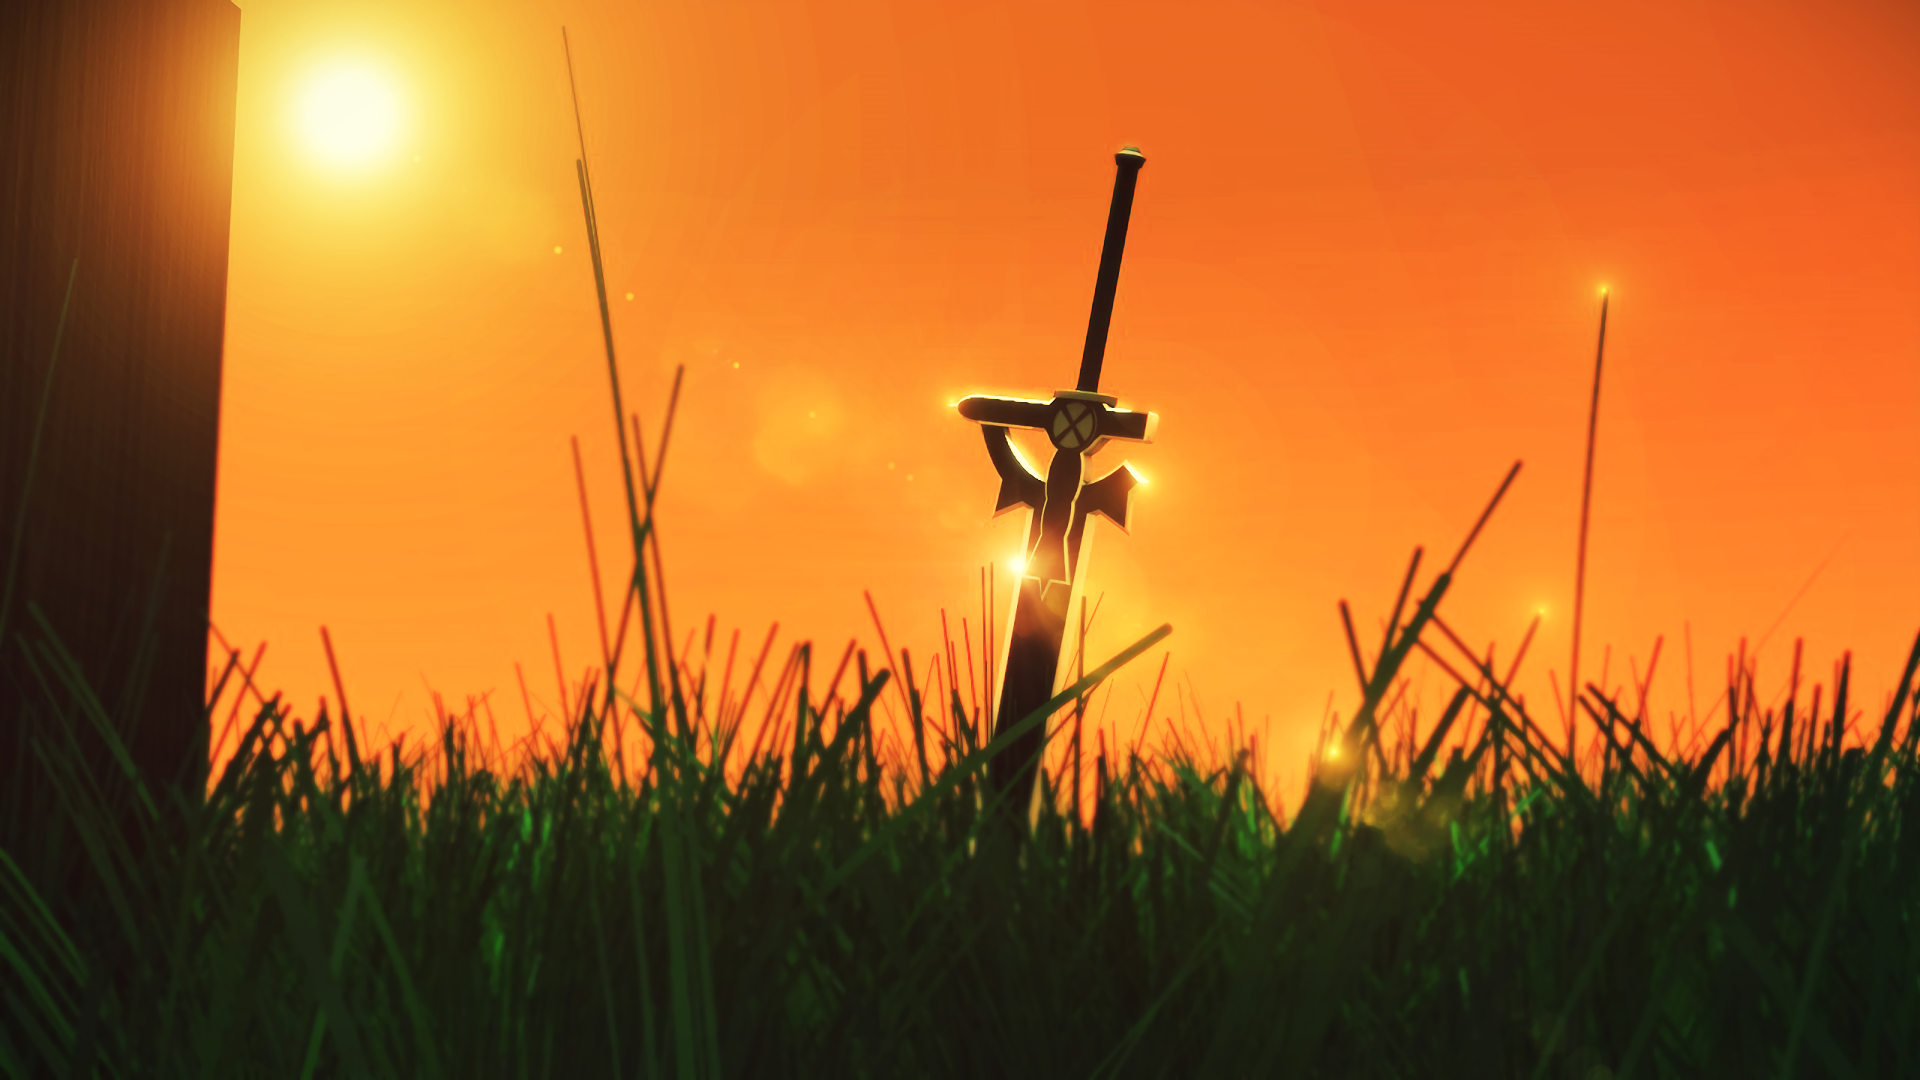 Sword Art Online HD Wallpaper Background Image